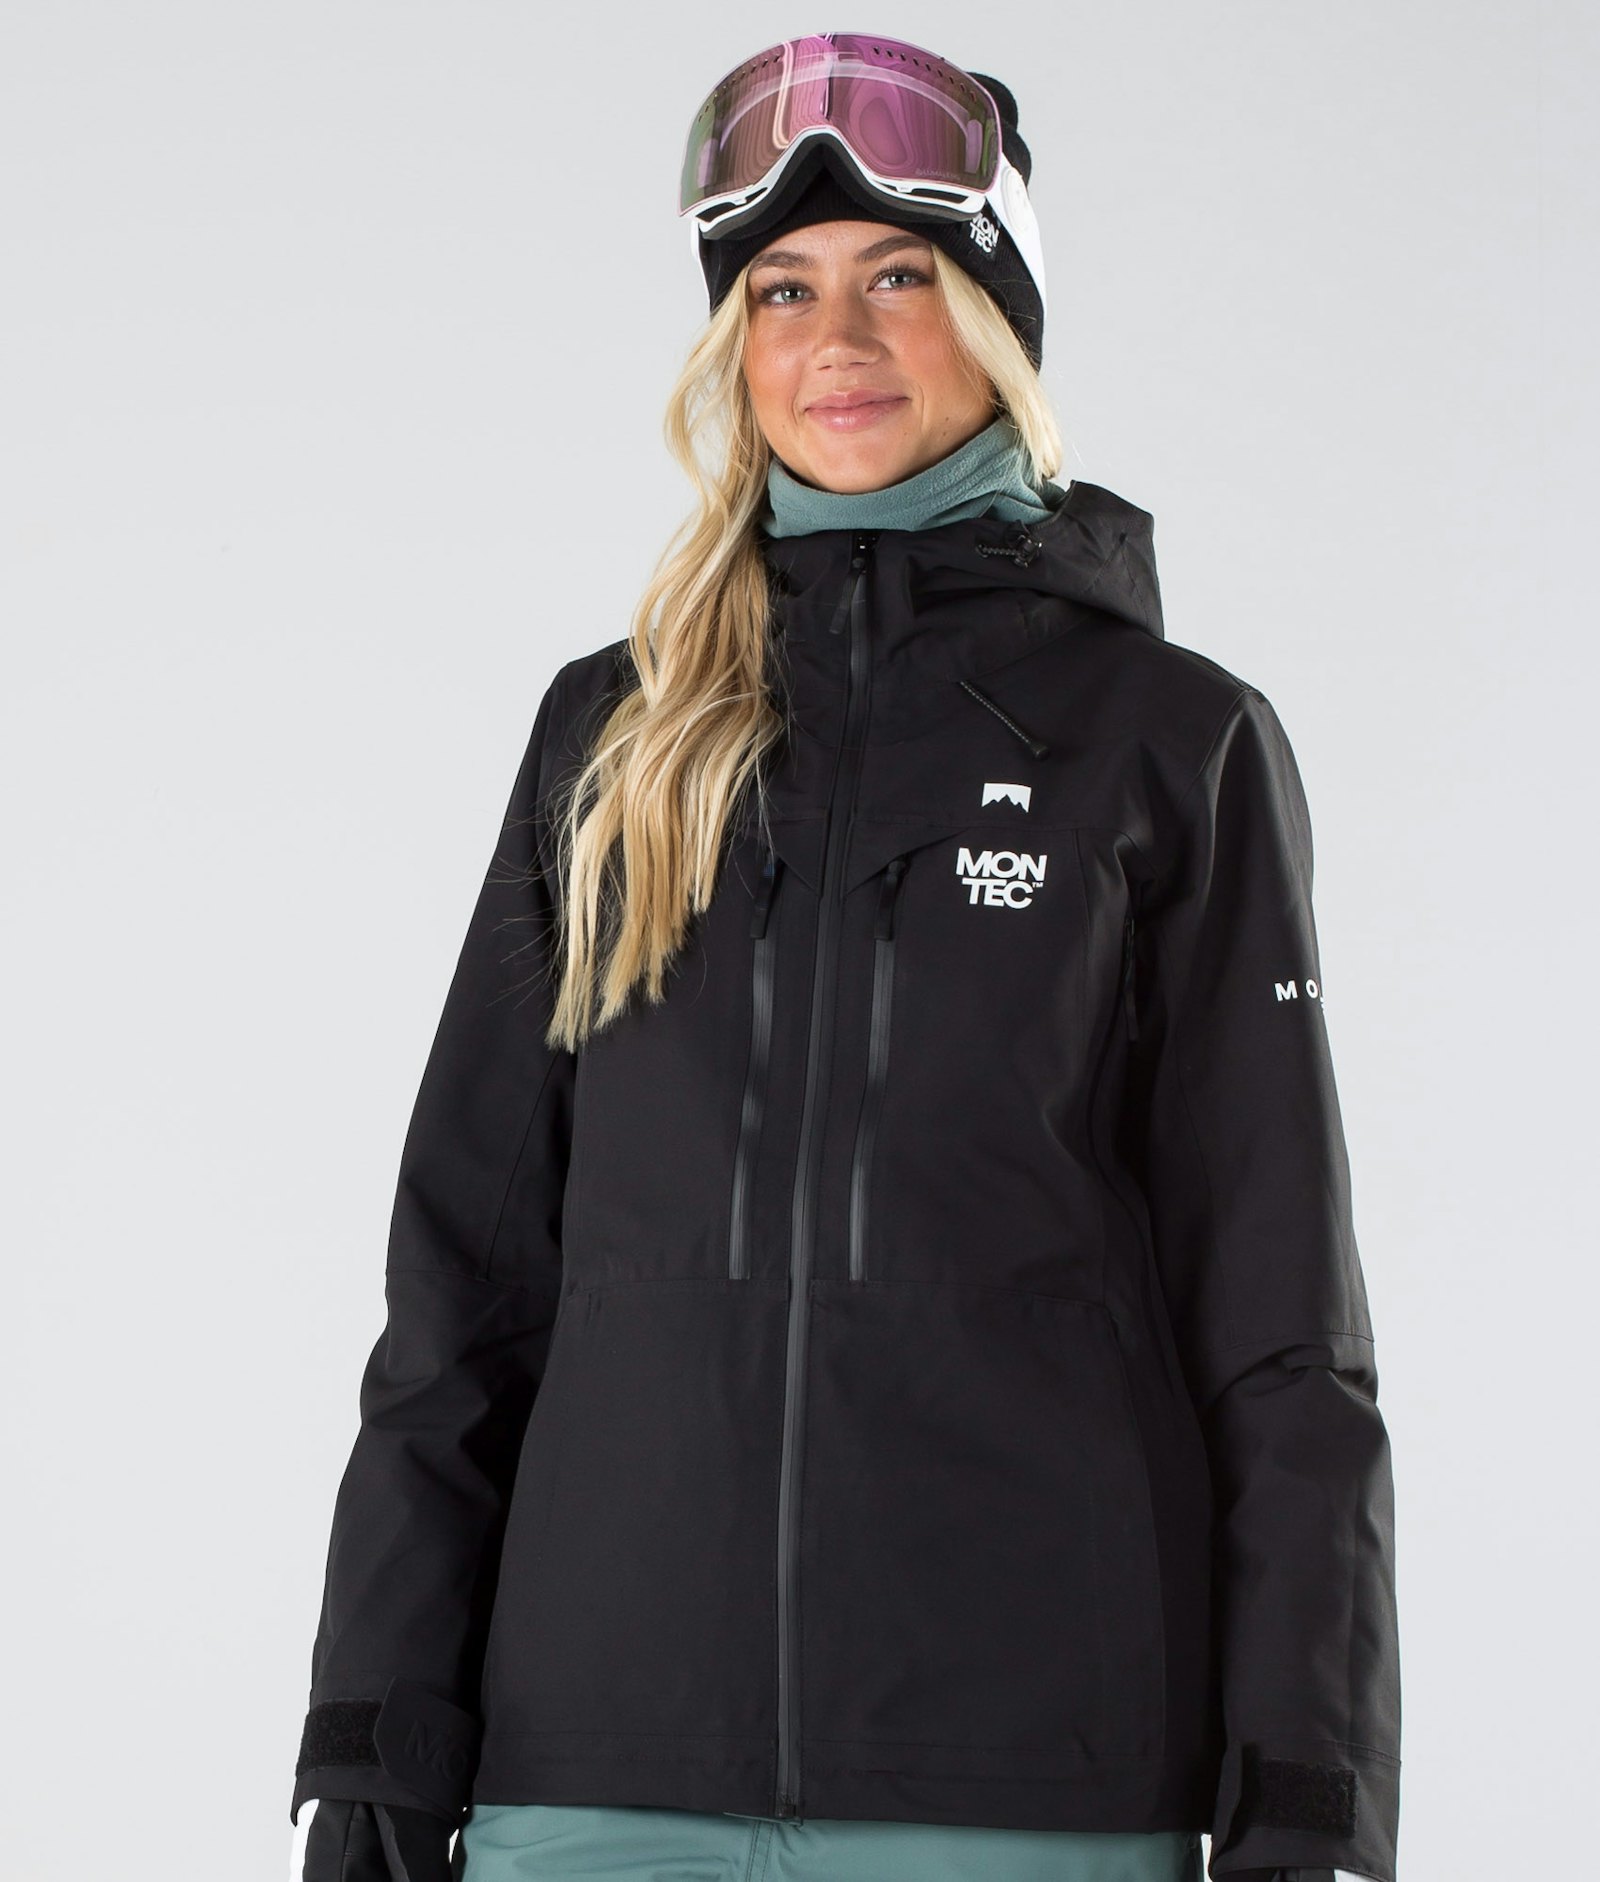 Moss W 2019 Snowboardjacke Damen Black